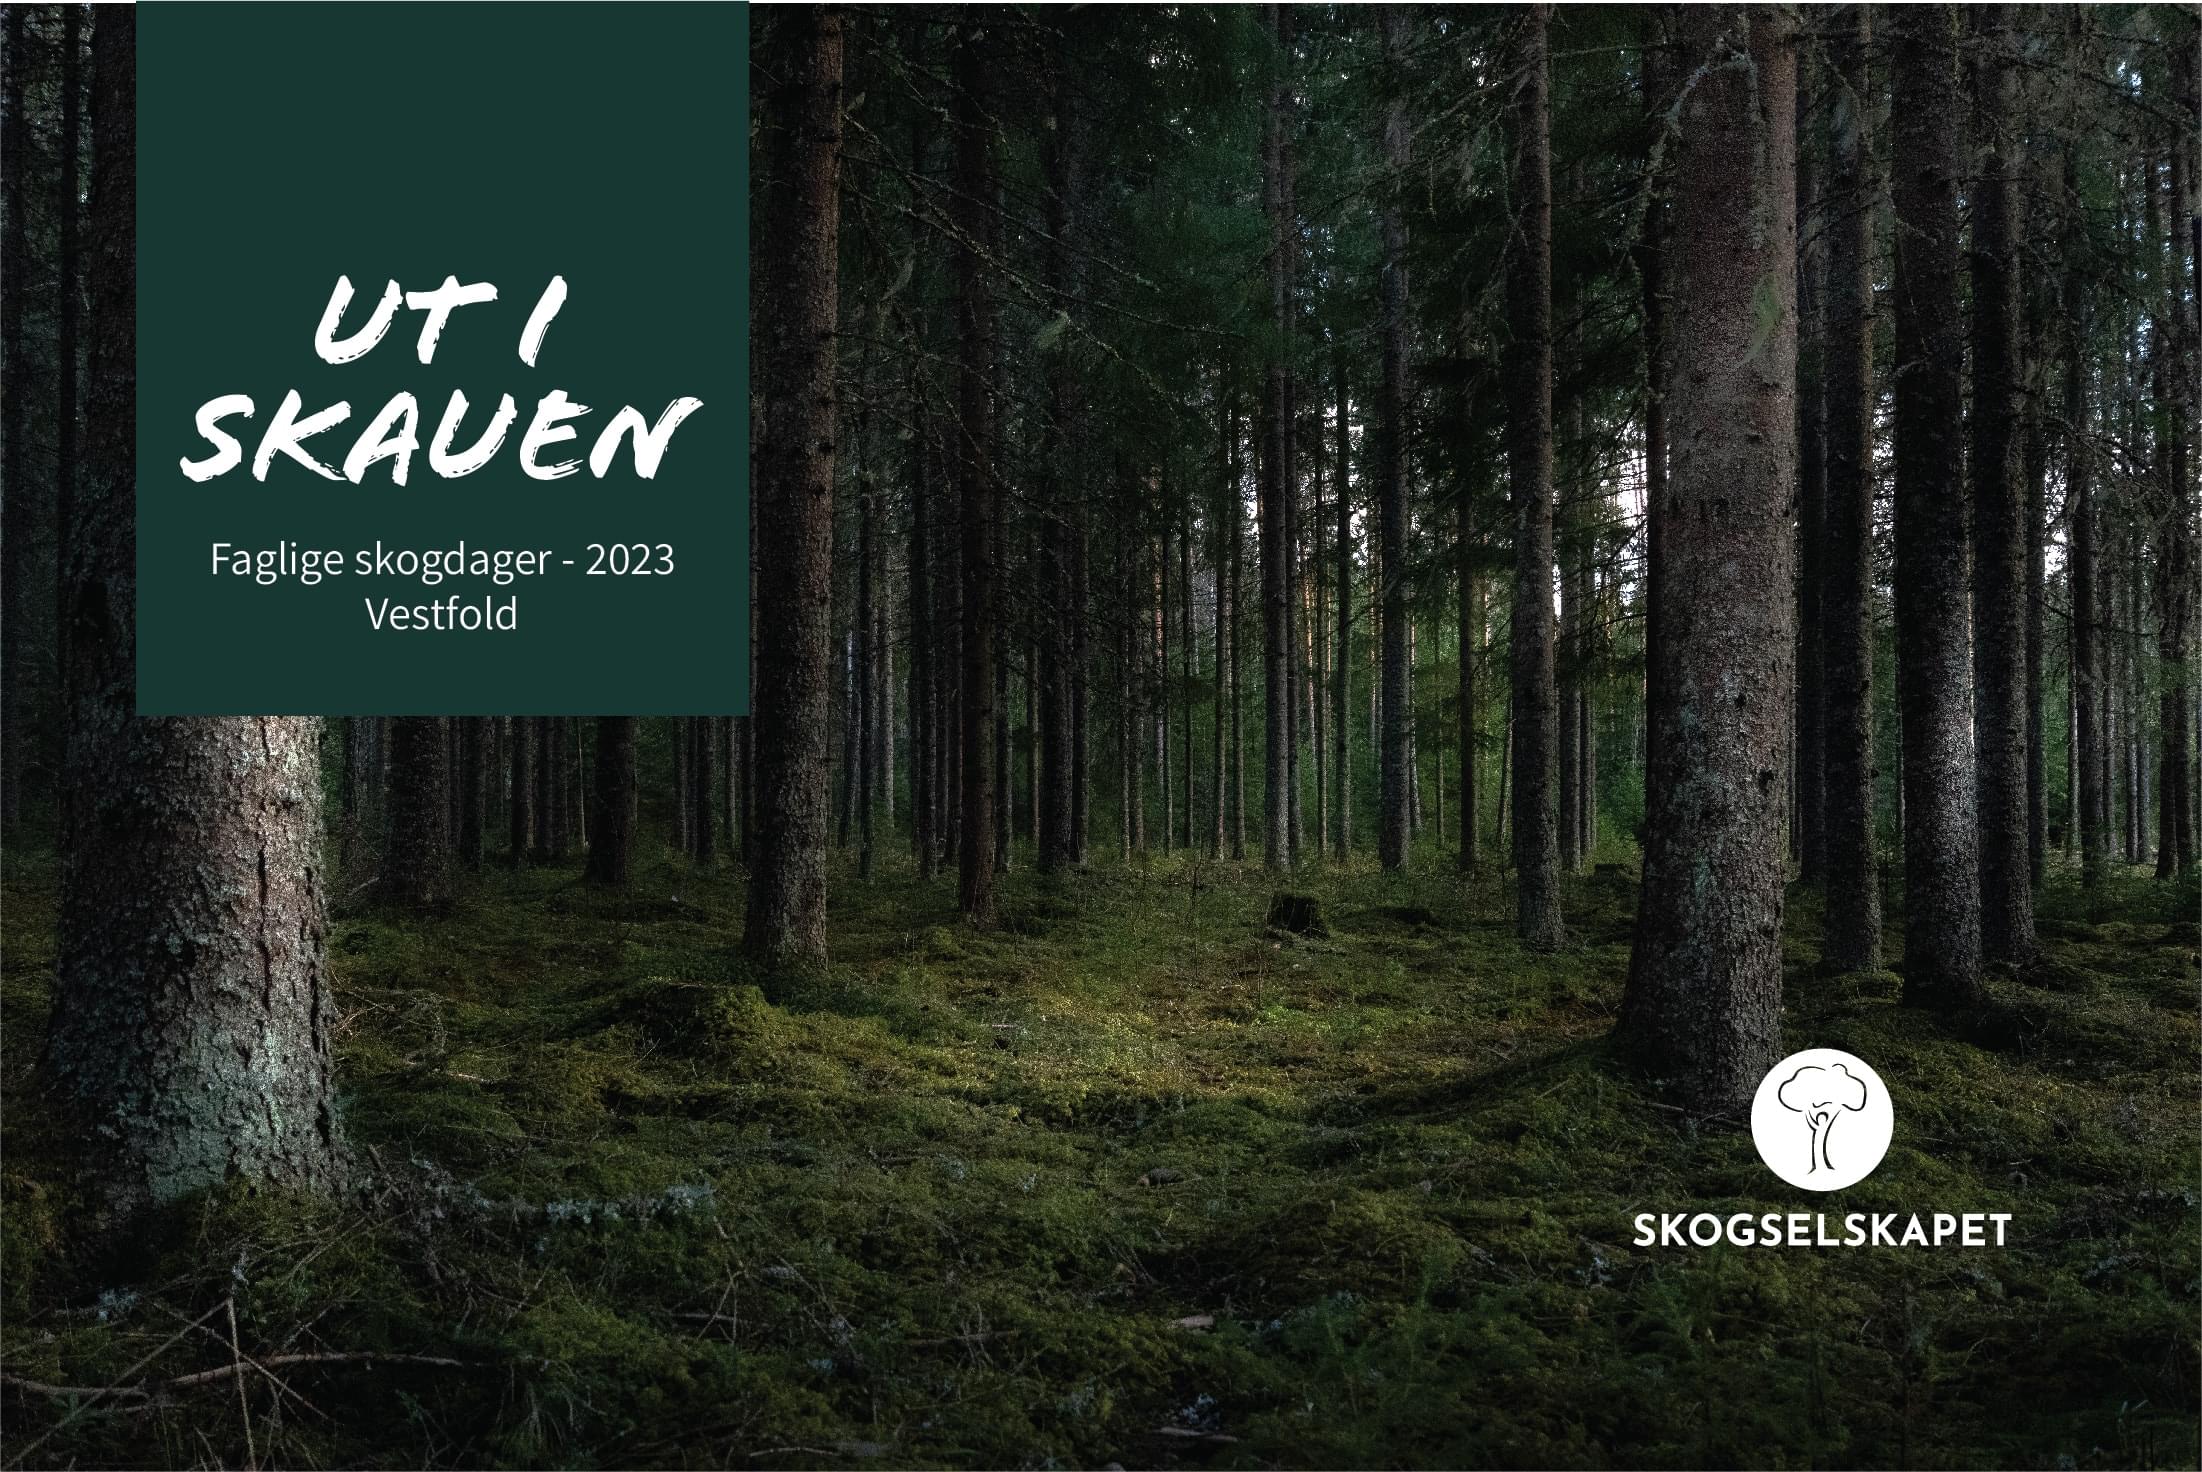 Ut i skauen 2023 – Faglige skogdager i Vestfold